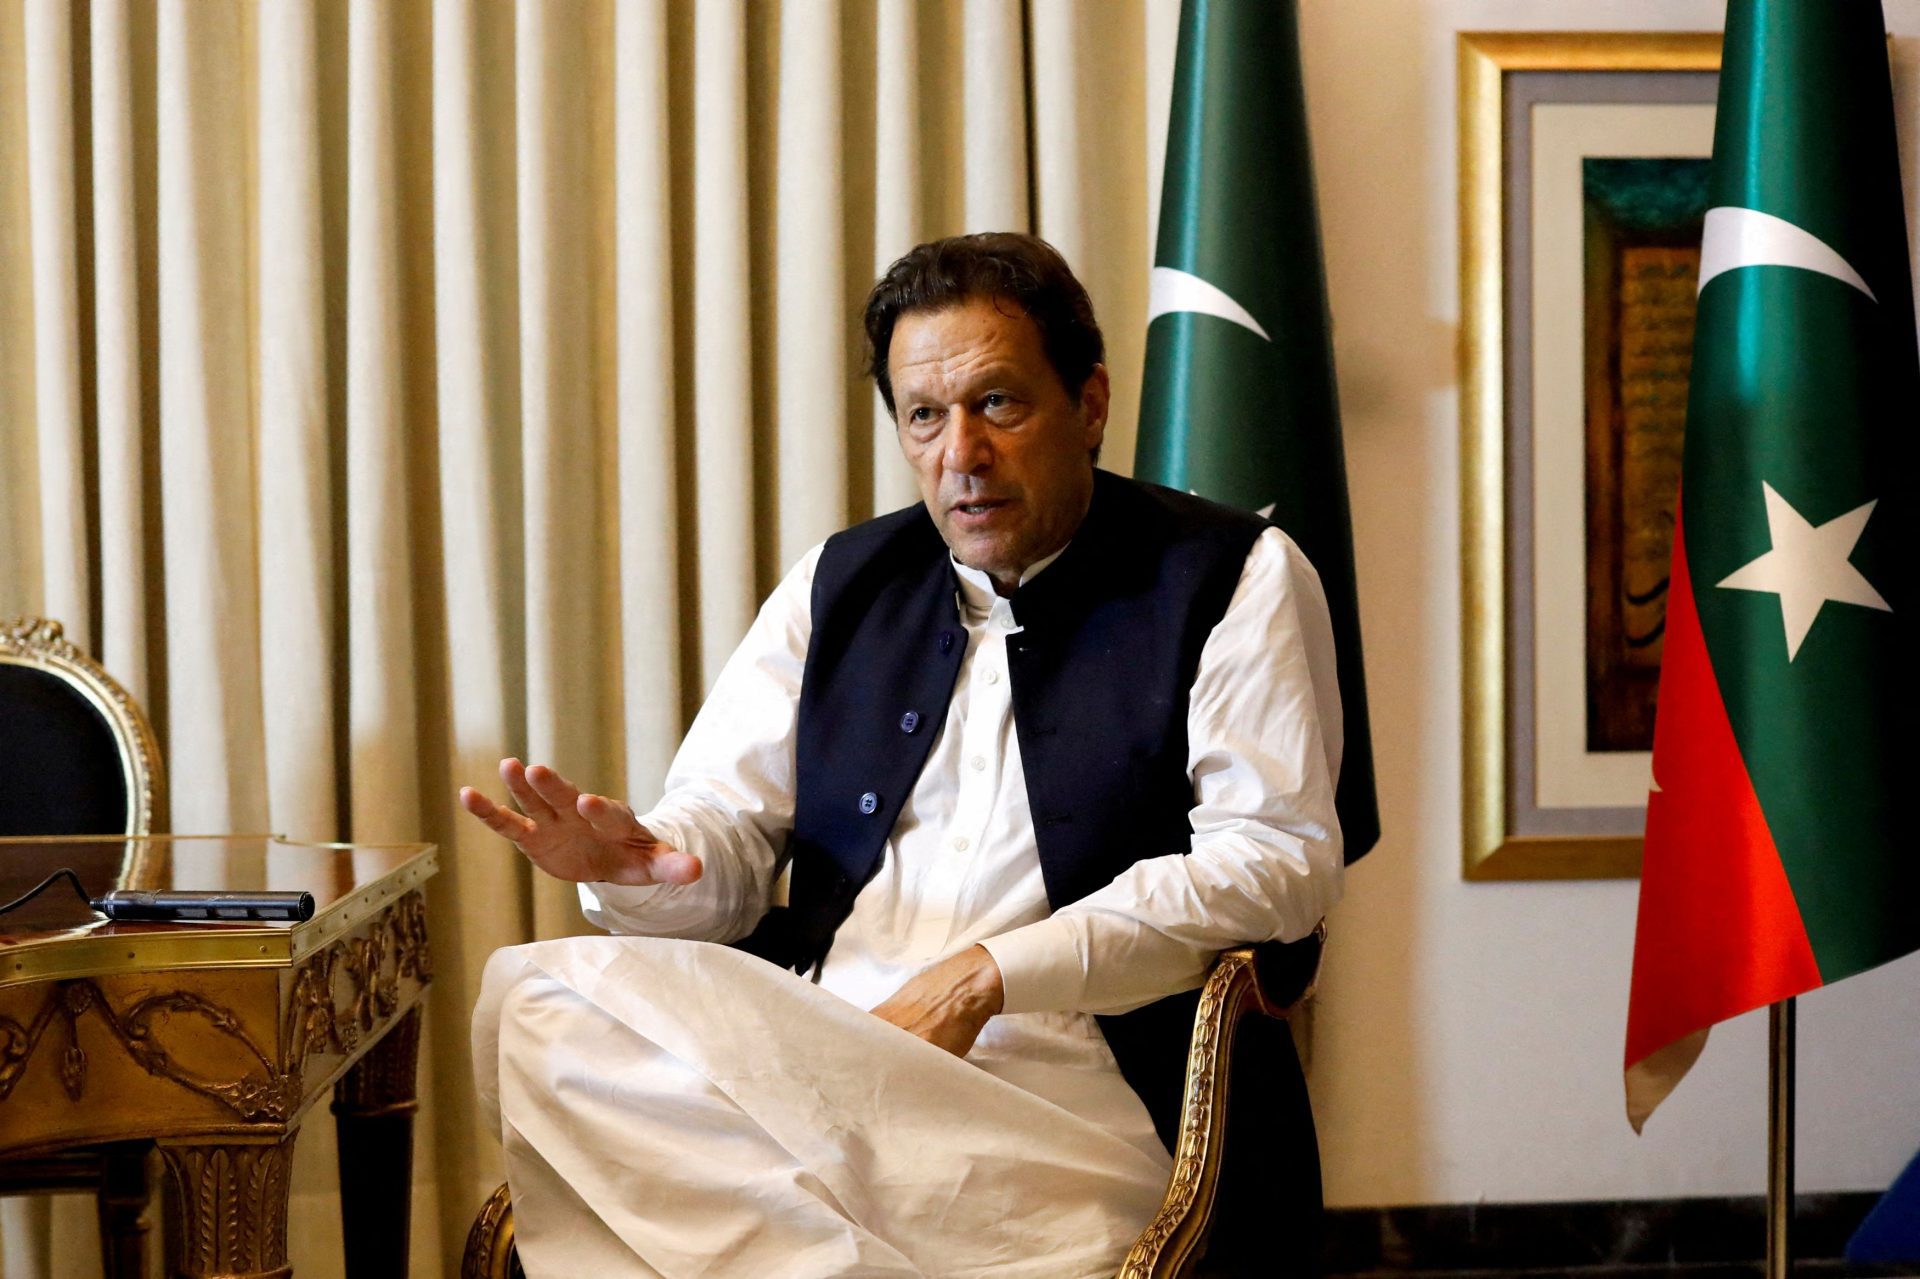 Arrestation abusive comité de l'ONU accuse le Pakistan sur Imran Khan